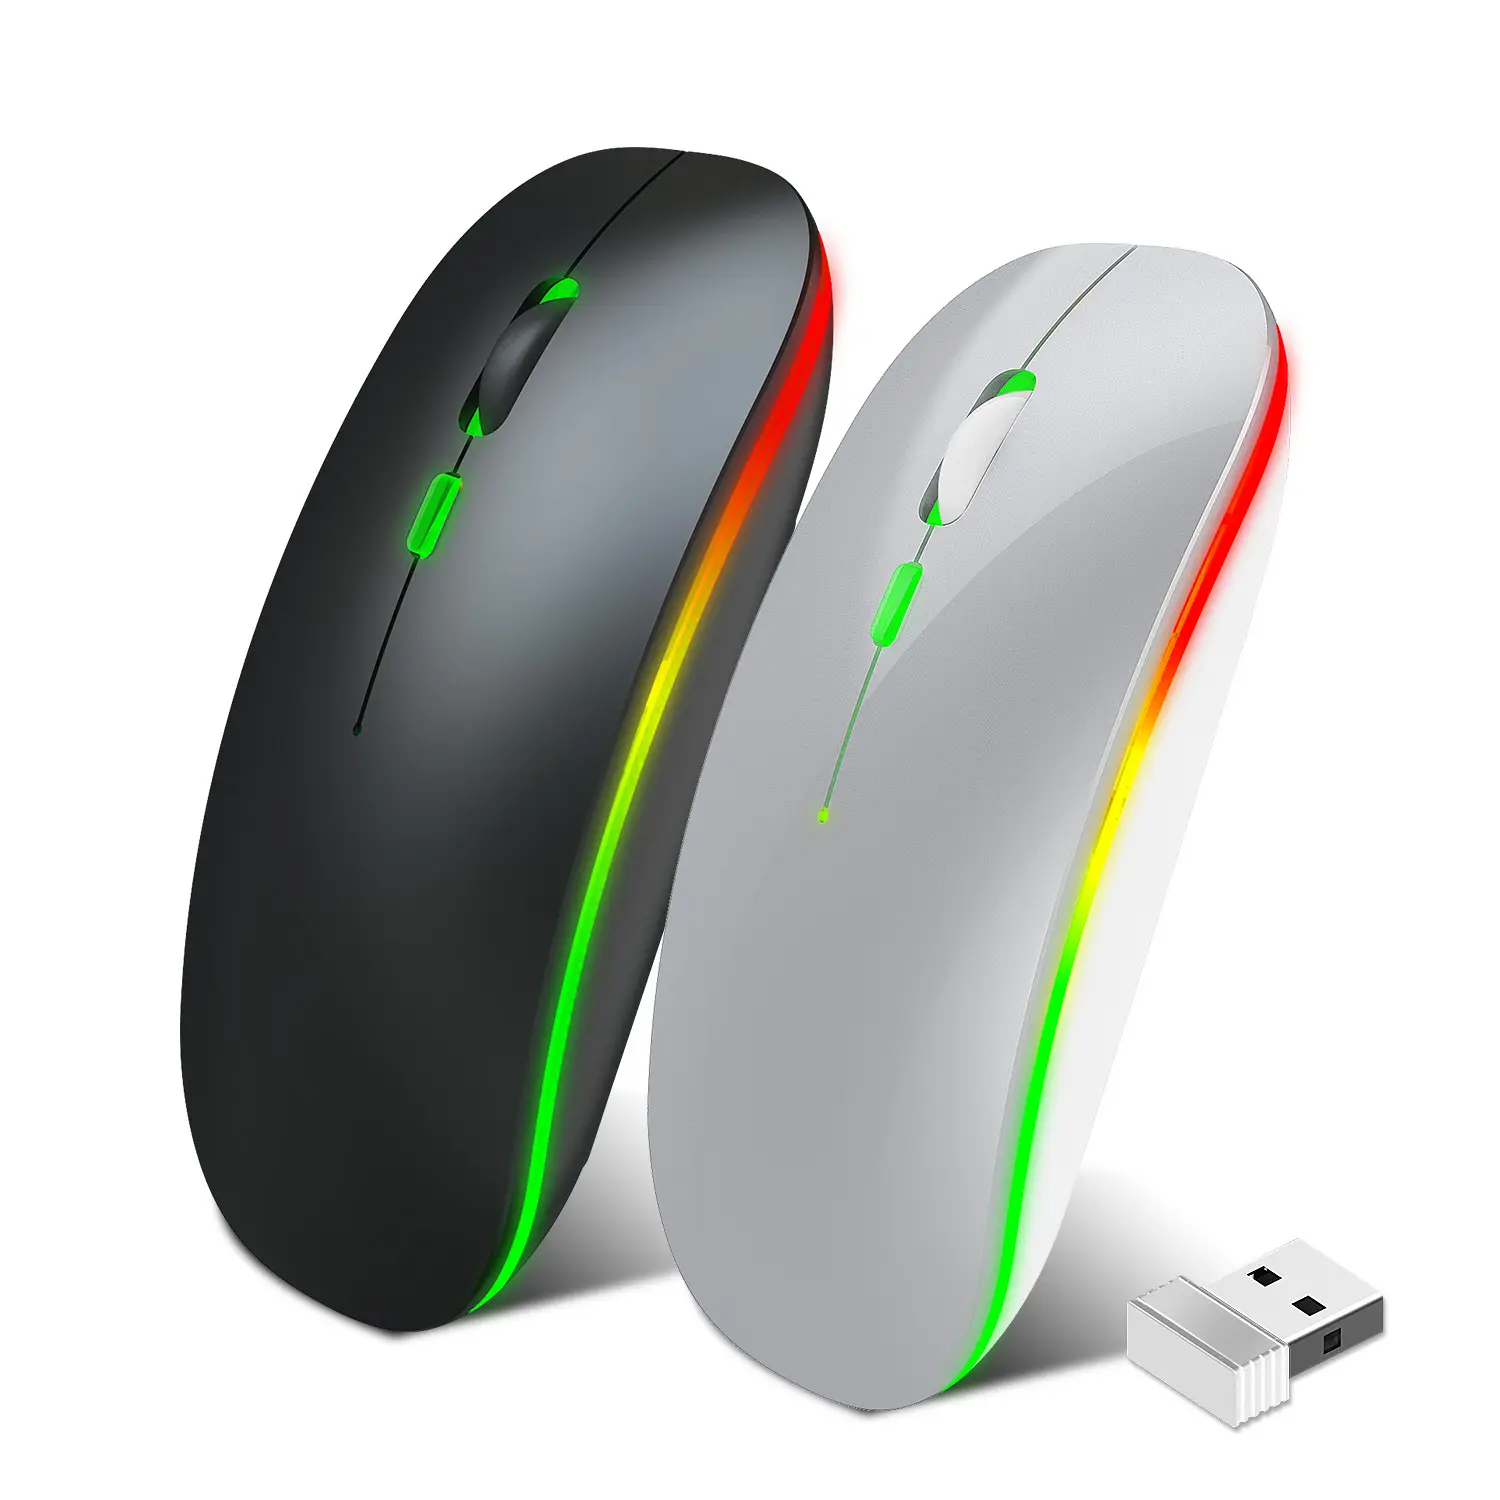 Mini-souris sans fil Rechargeable Ultra-fine, silencieuse, colorée Led, accessoire pour ordinateur, nouveauté 2020